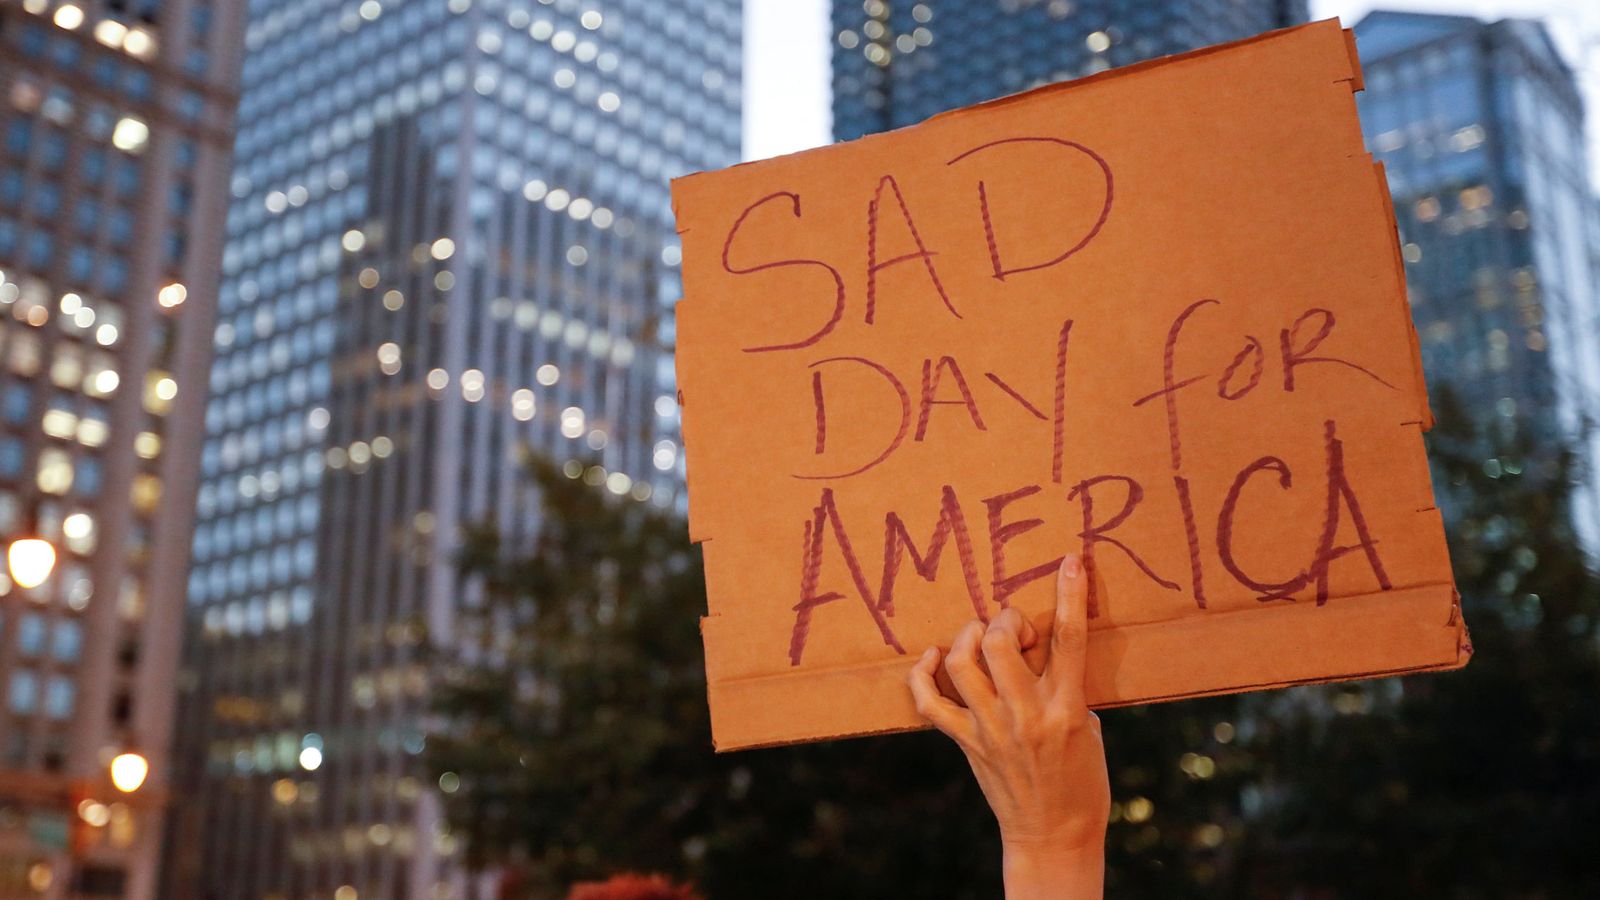 Foto: Un ciudadano protesta por el resultado de las elecciones en los Estados Unidos frente a la torre Trump en Chicago. (Reuters)